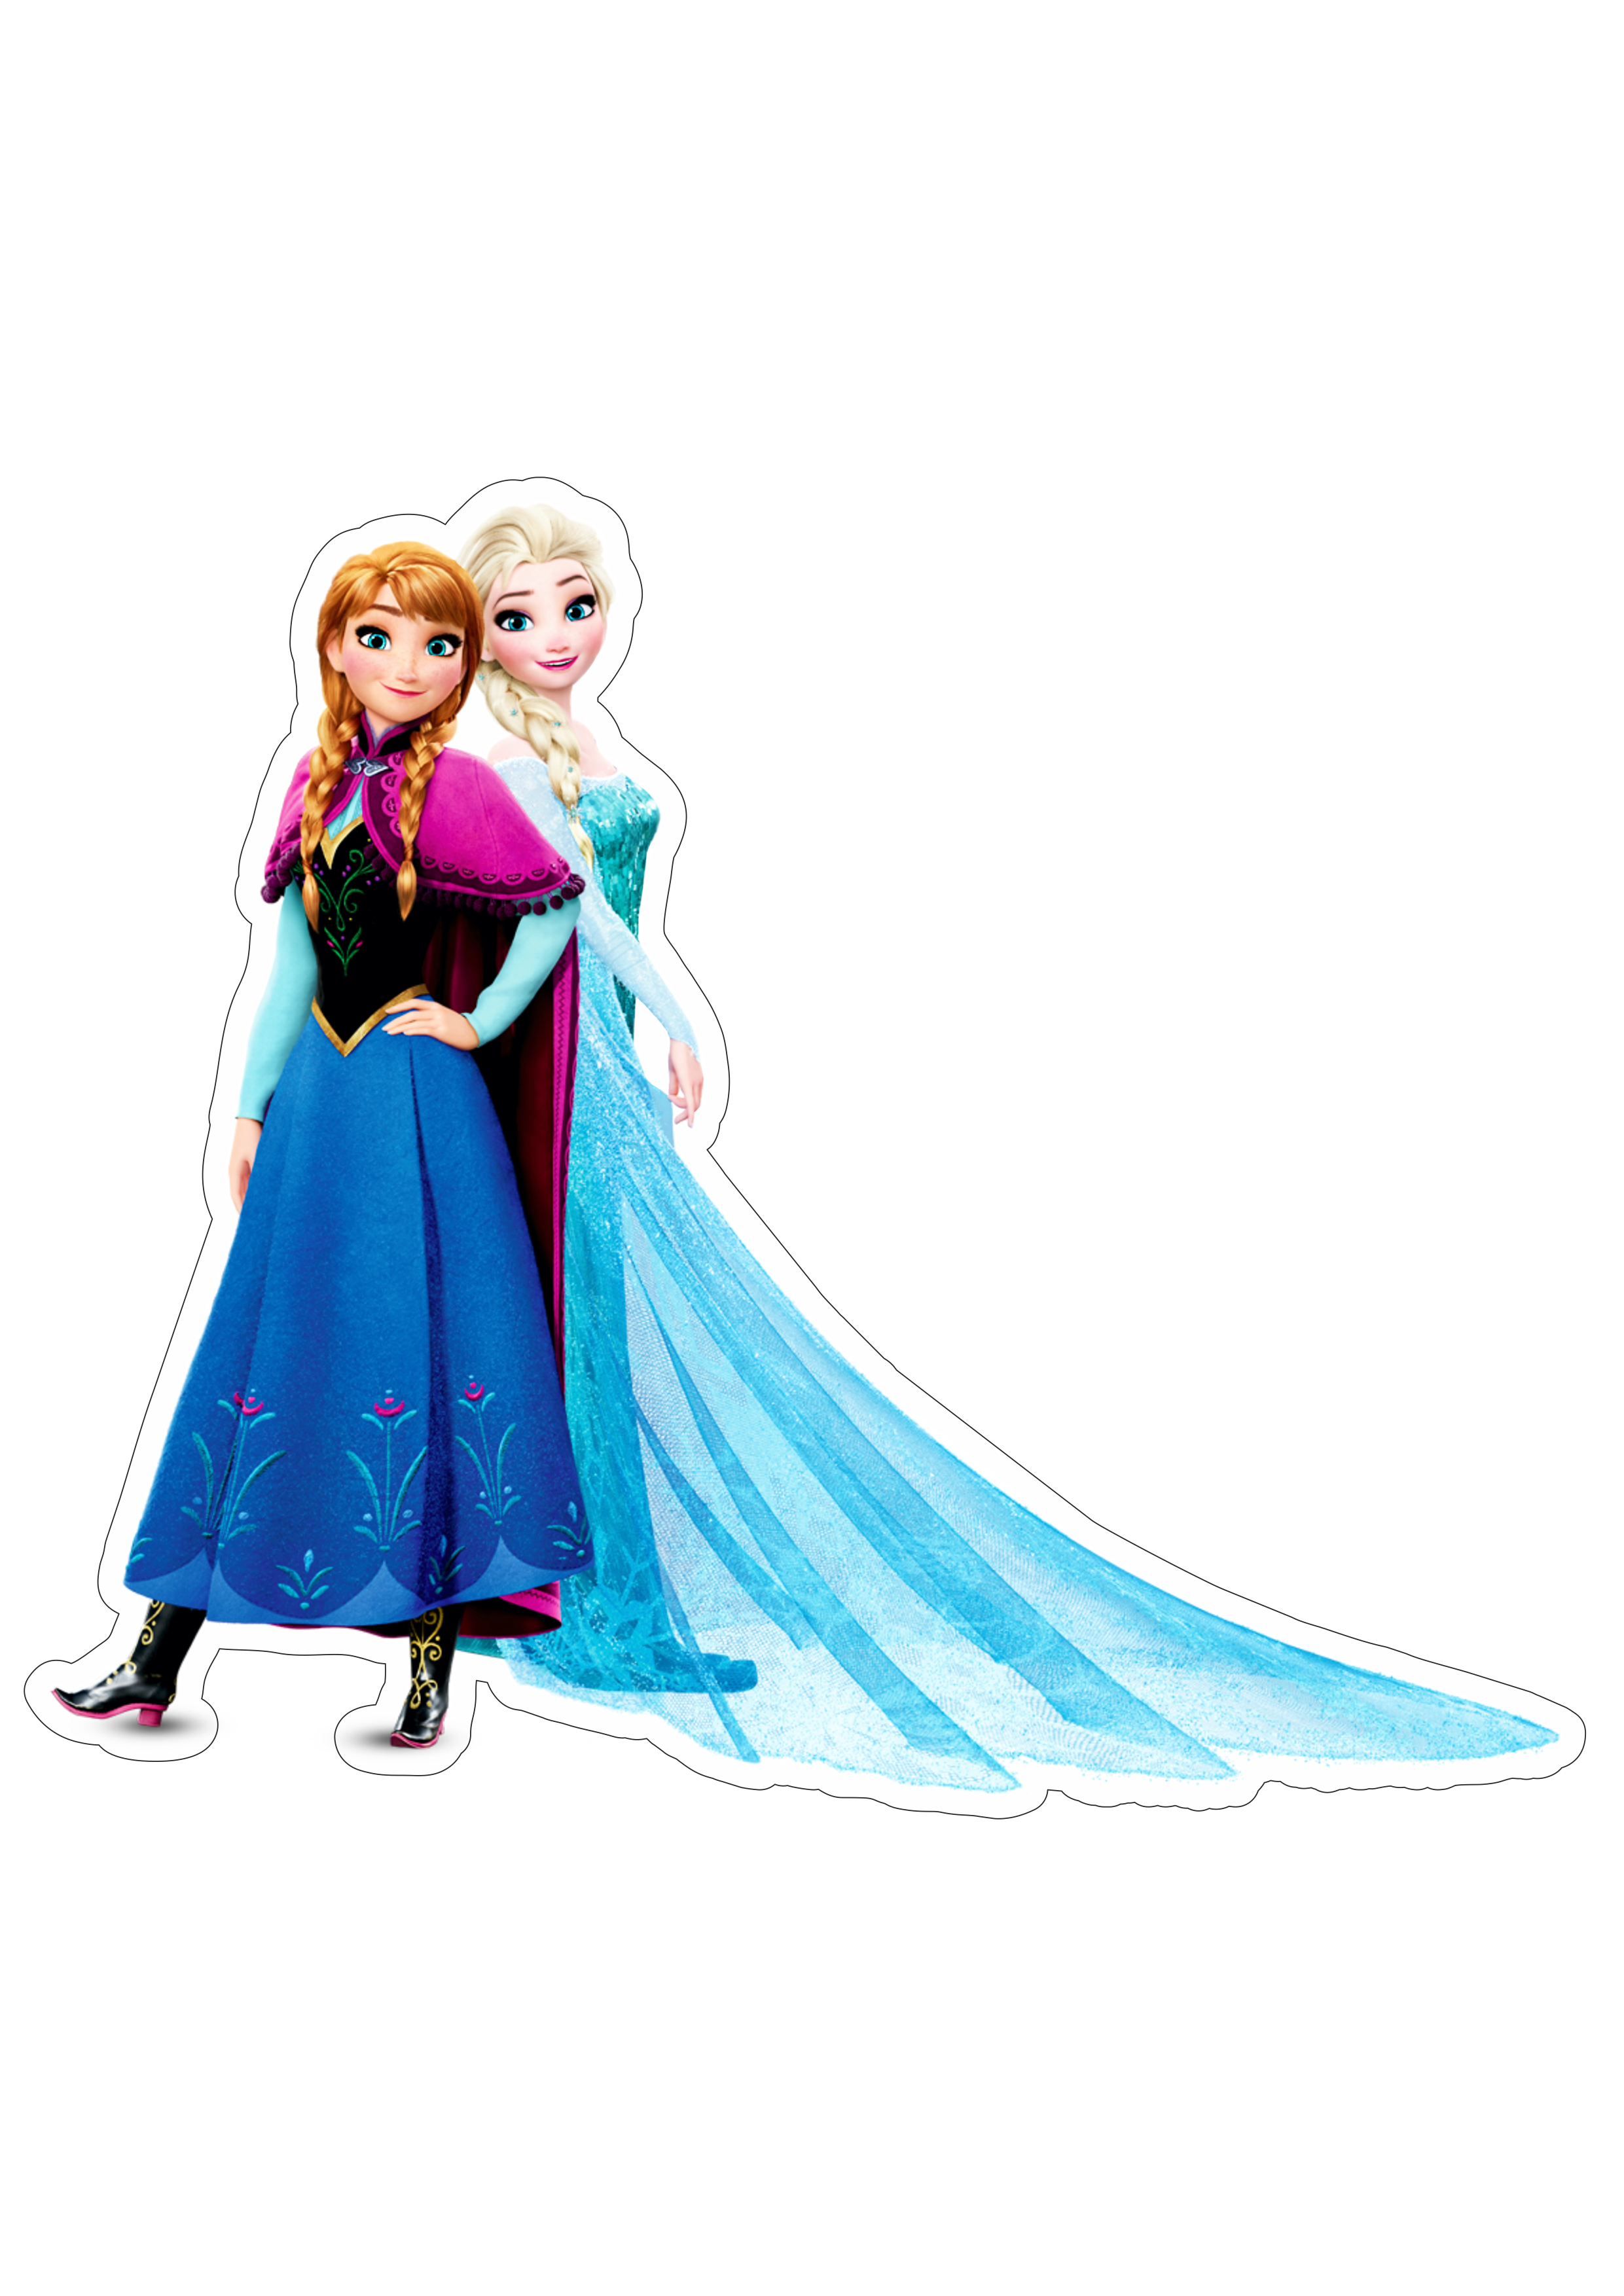 Frozen personagens Elsa e princesa Anna disney animação infantil streaming imagem fundo transparente com contorno png